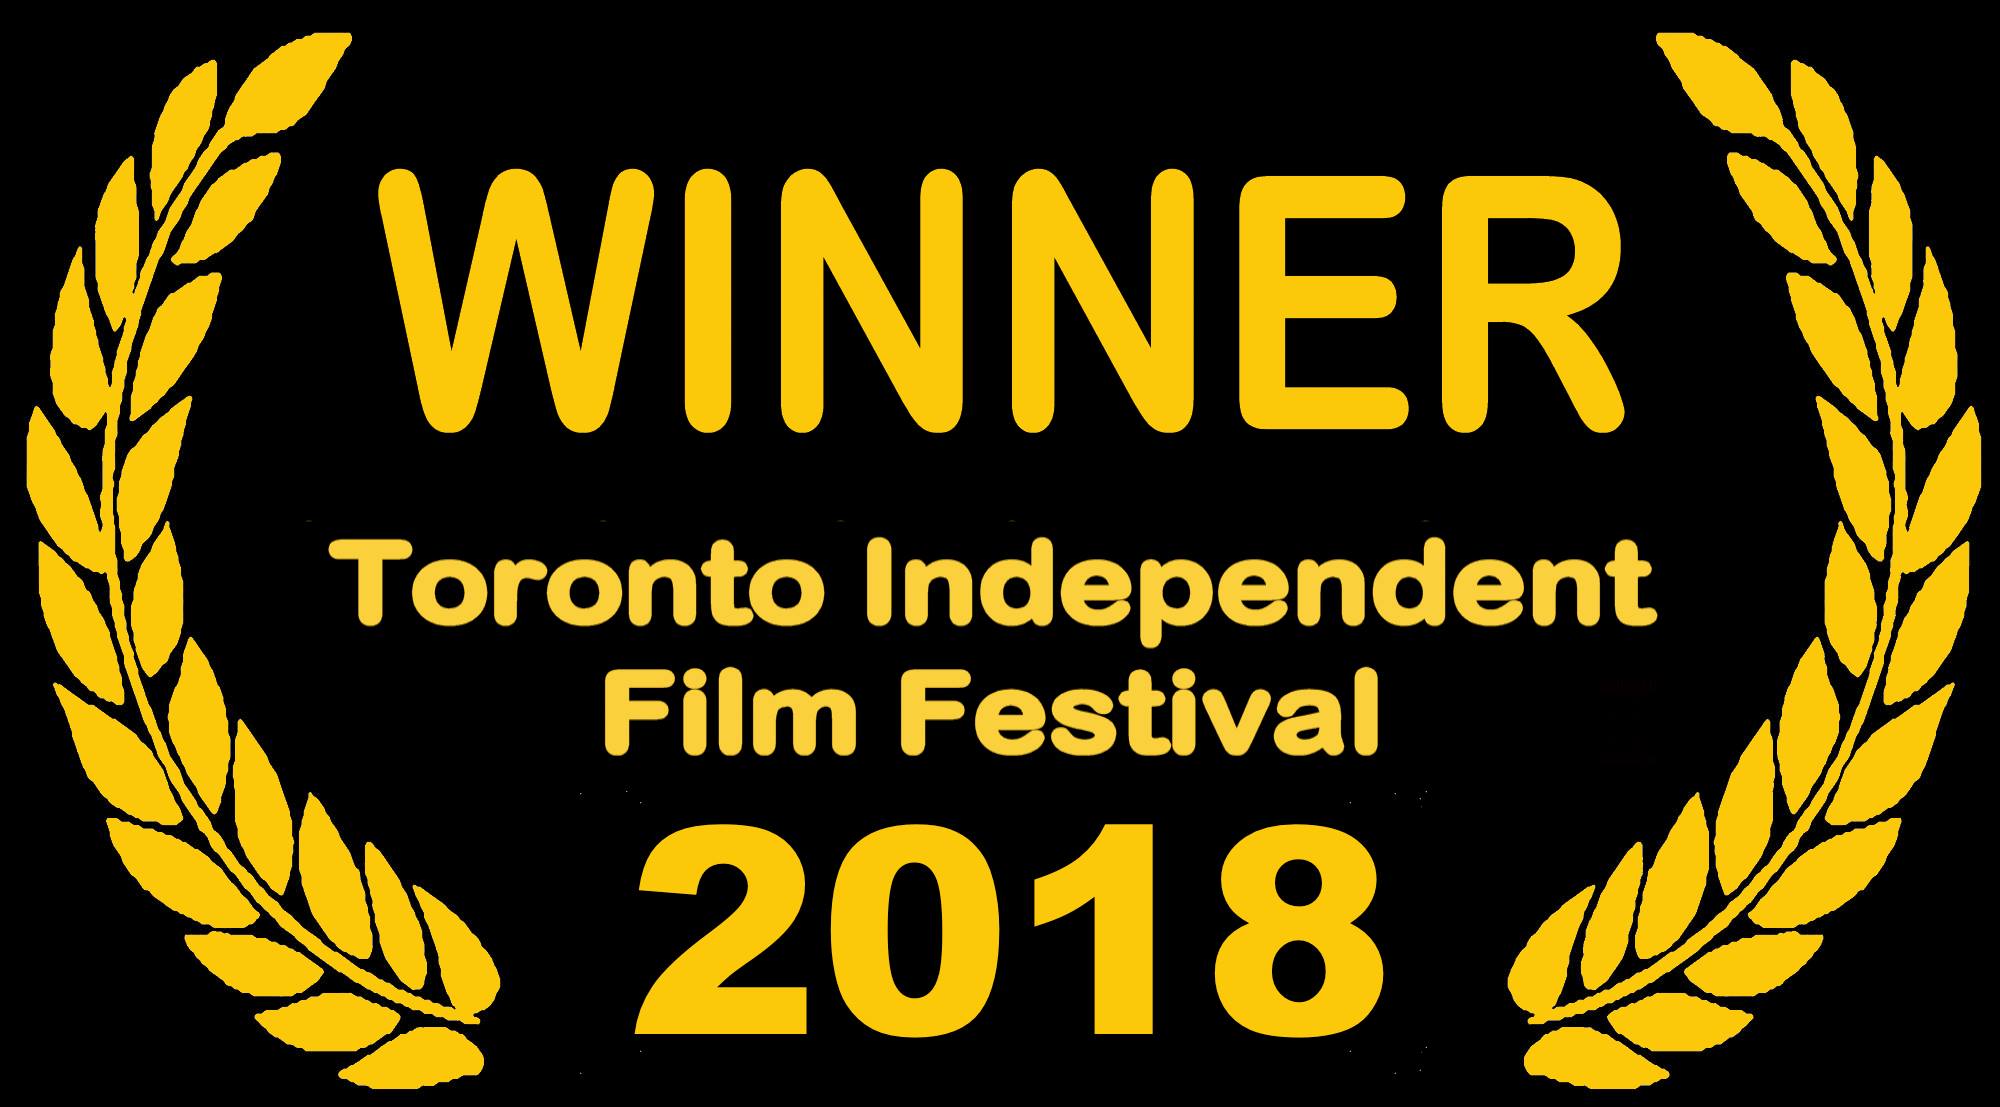 Steve Koven’s Documentary Short Wins at Toronto Indie Film Festival